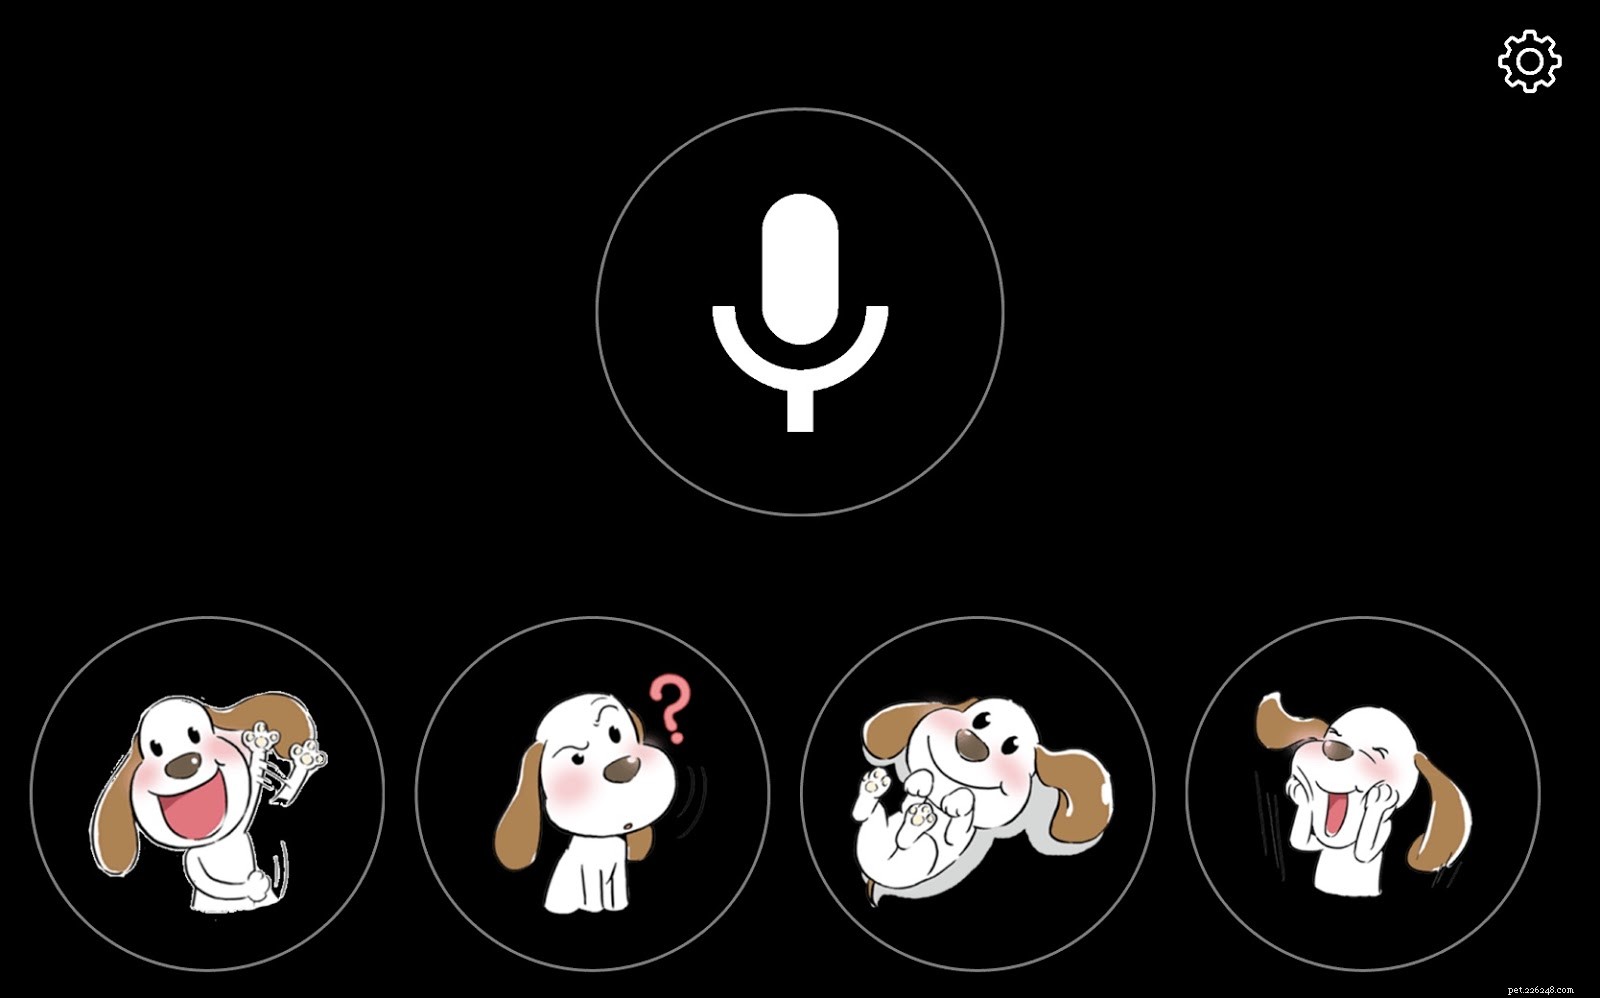 5 bezplatných aplikací, které budete vy a váš pes (štěně) milovat